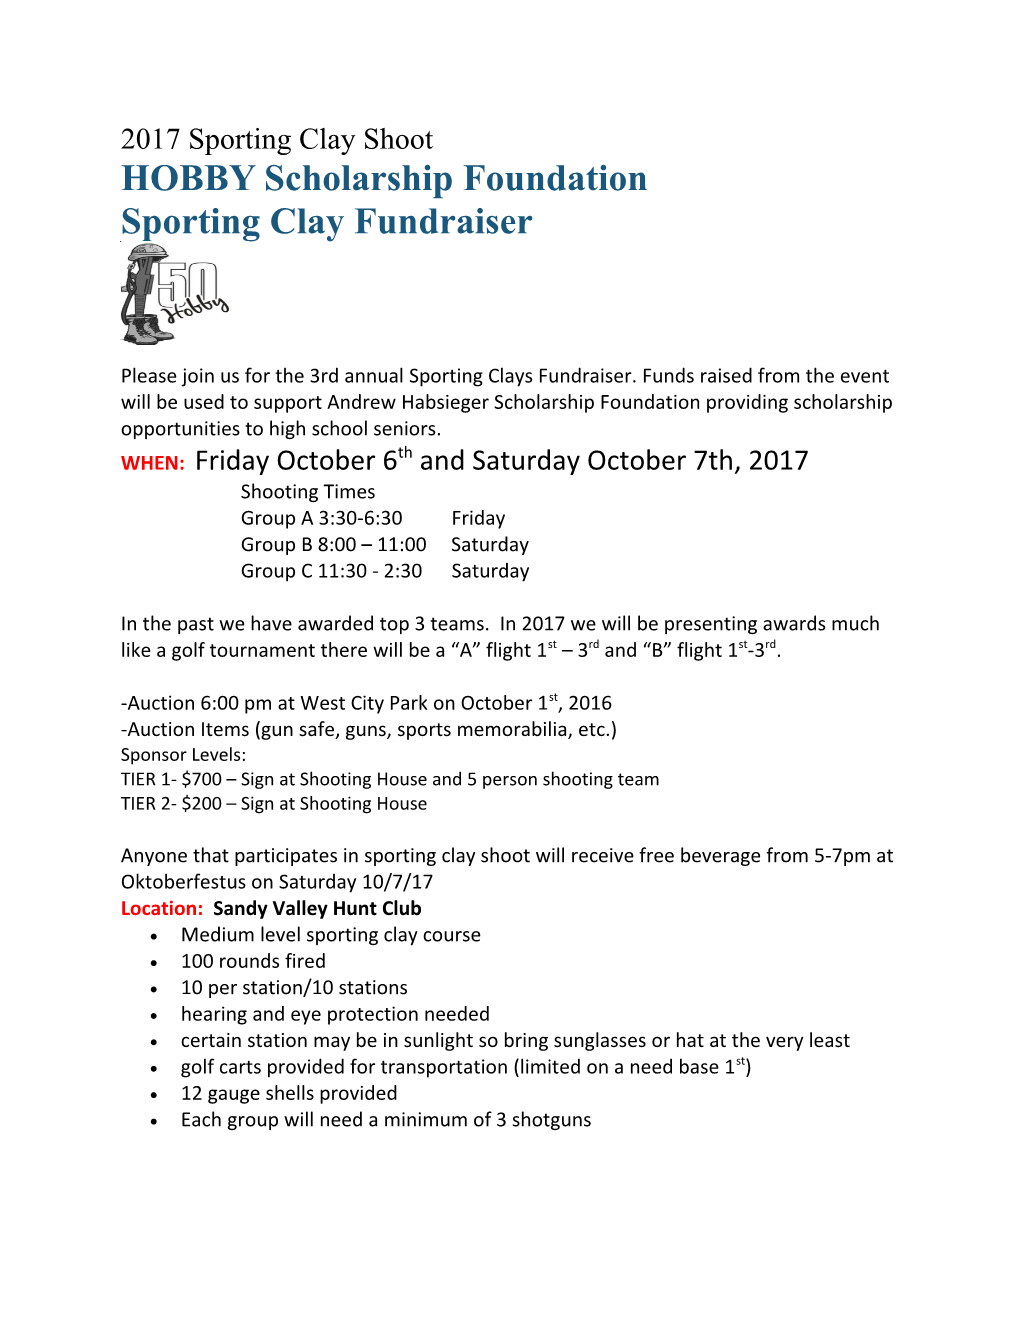 HOBBY Scholarship Foundation